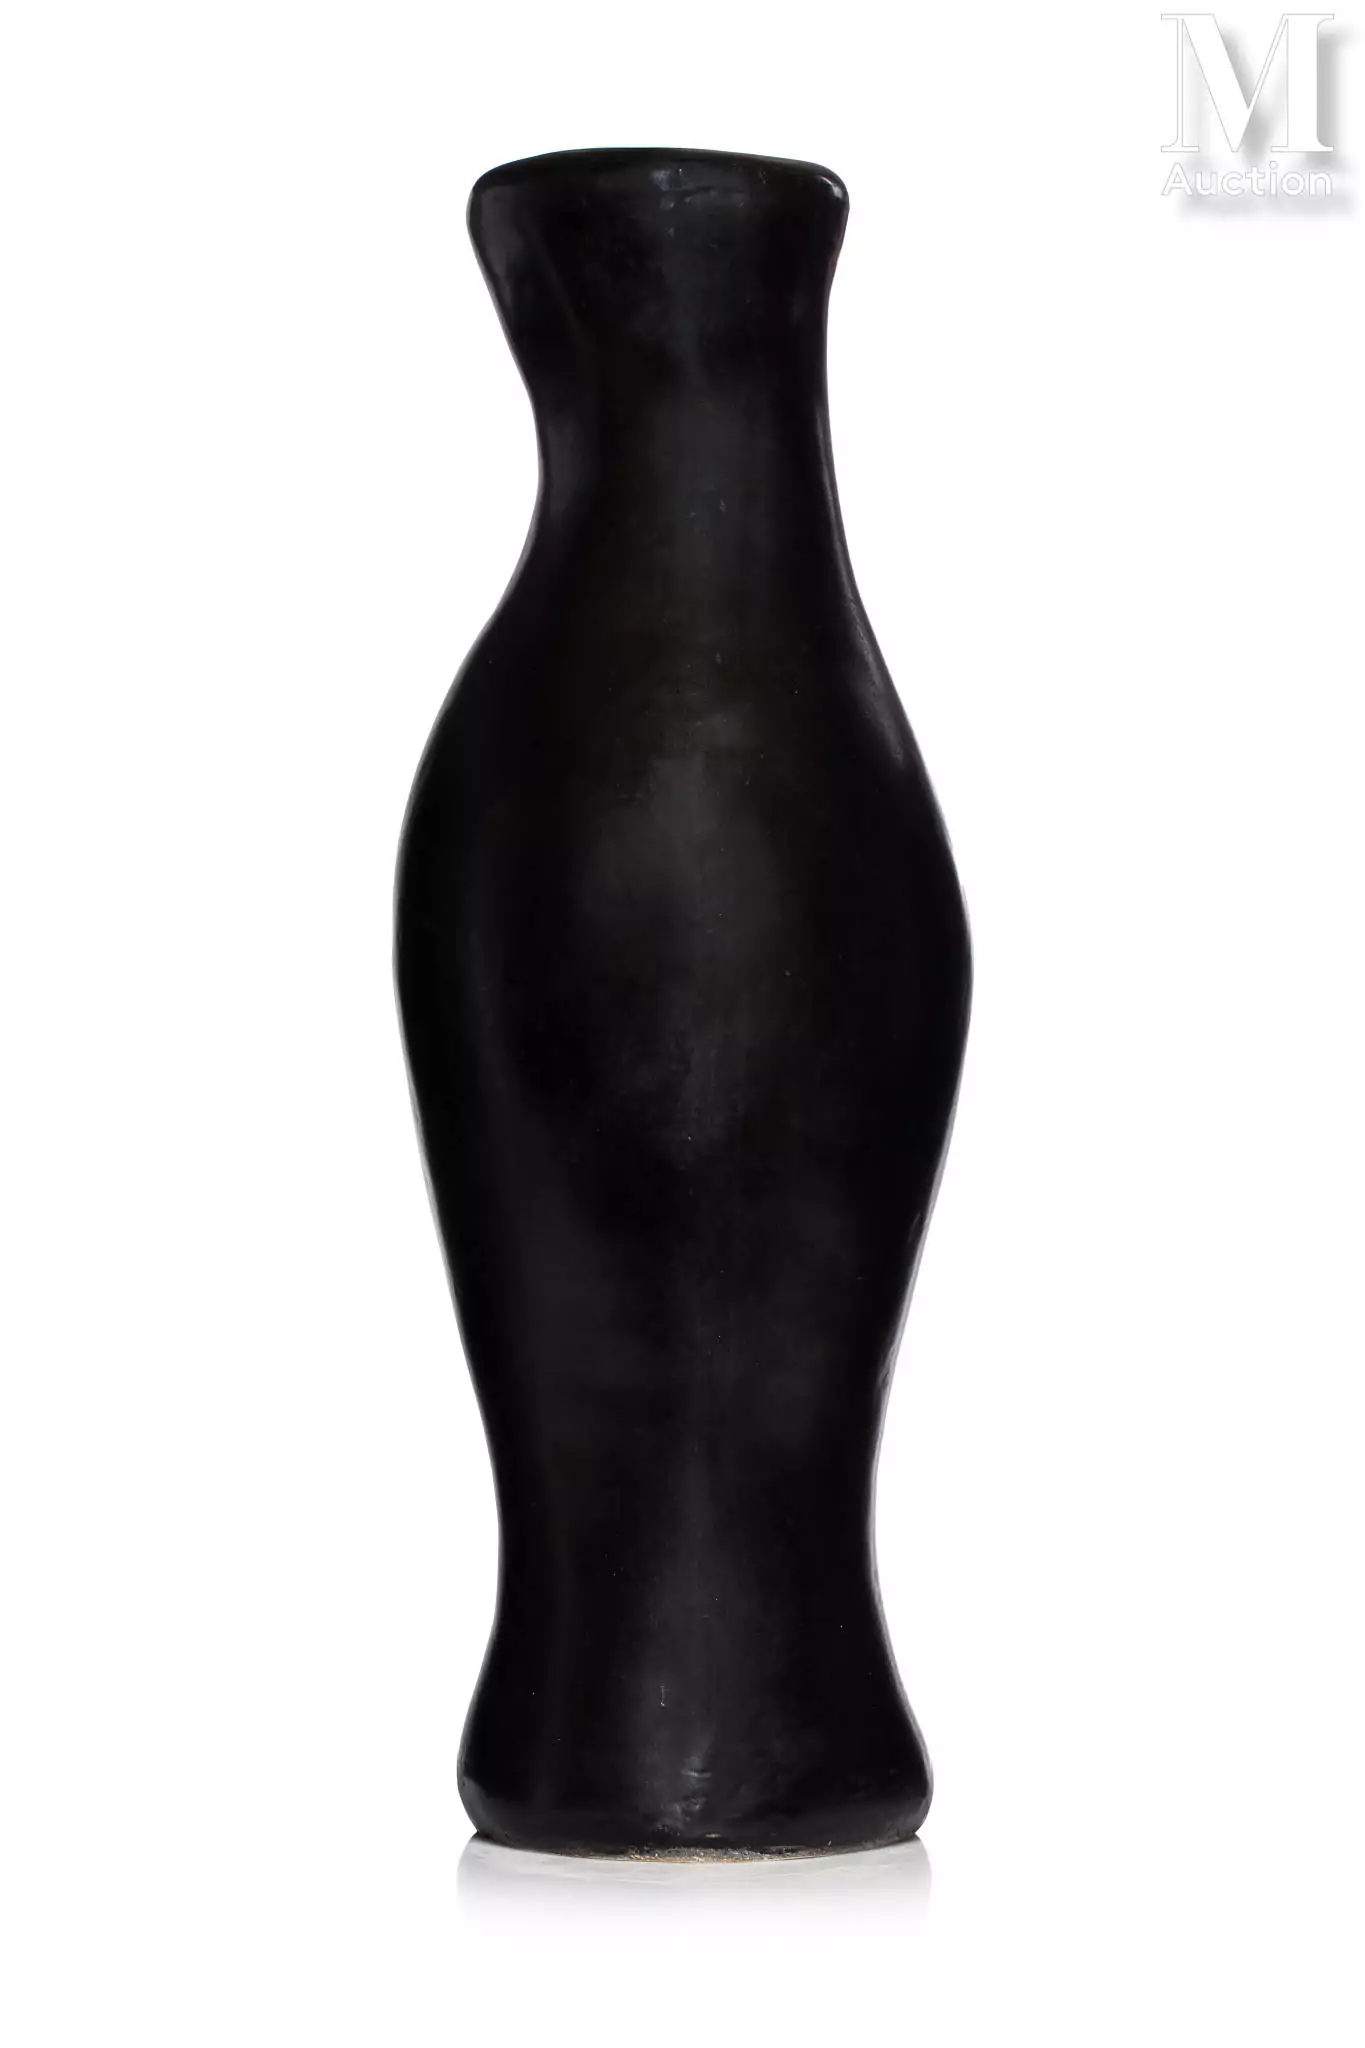 Georges JOUVE (1910 - 1964)Rare et important vase en céramique émaillée d’un intense noir